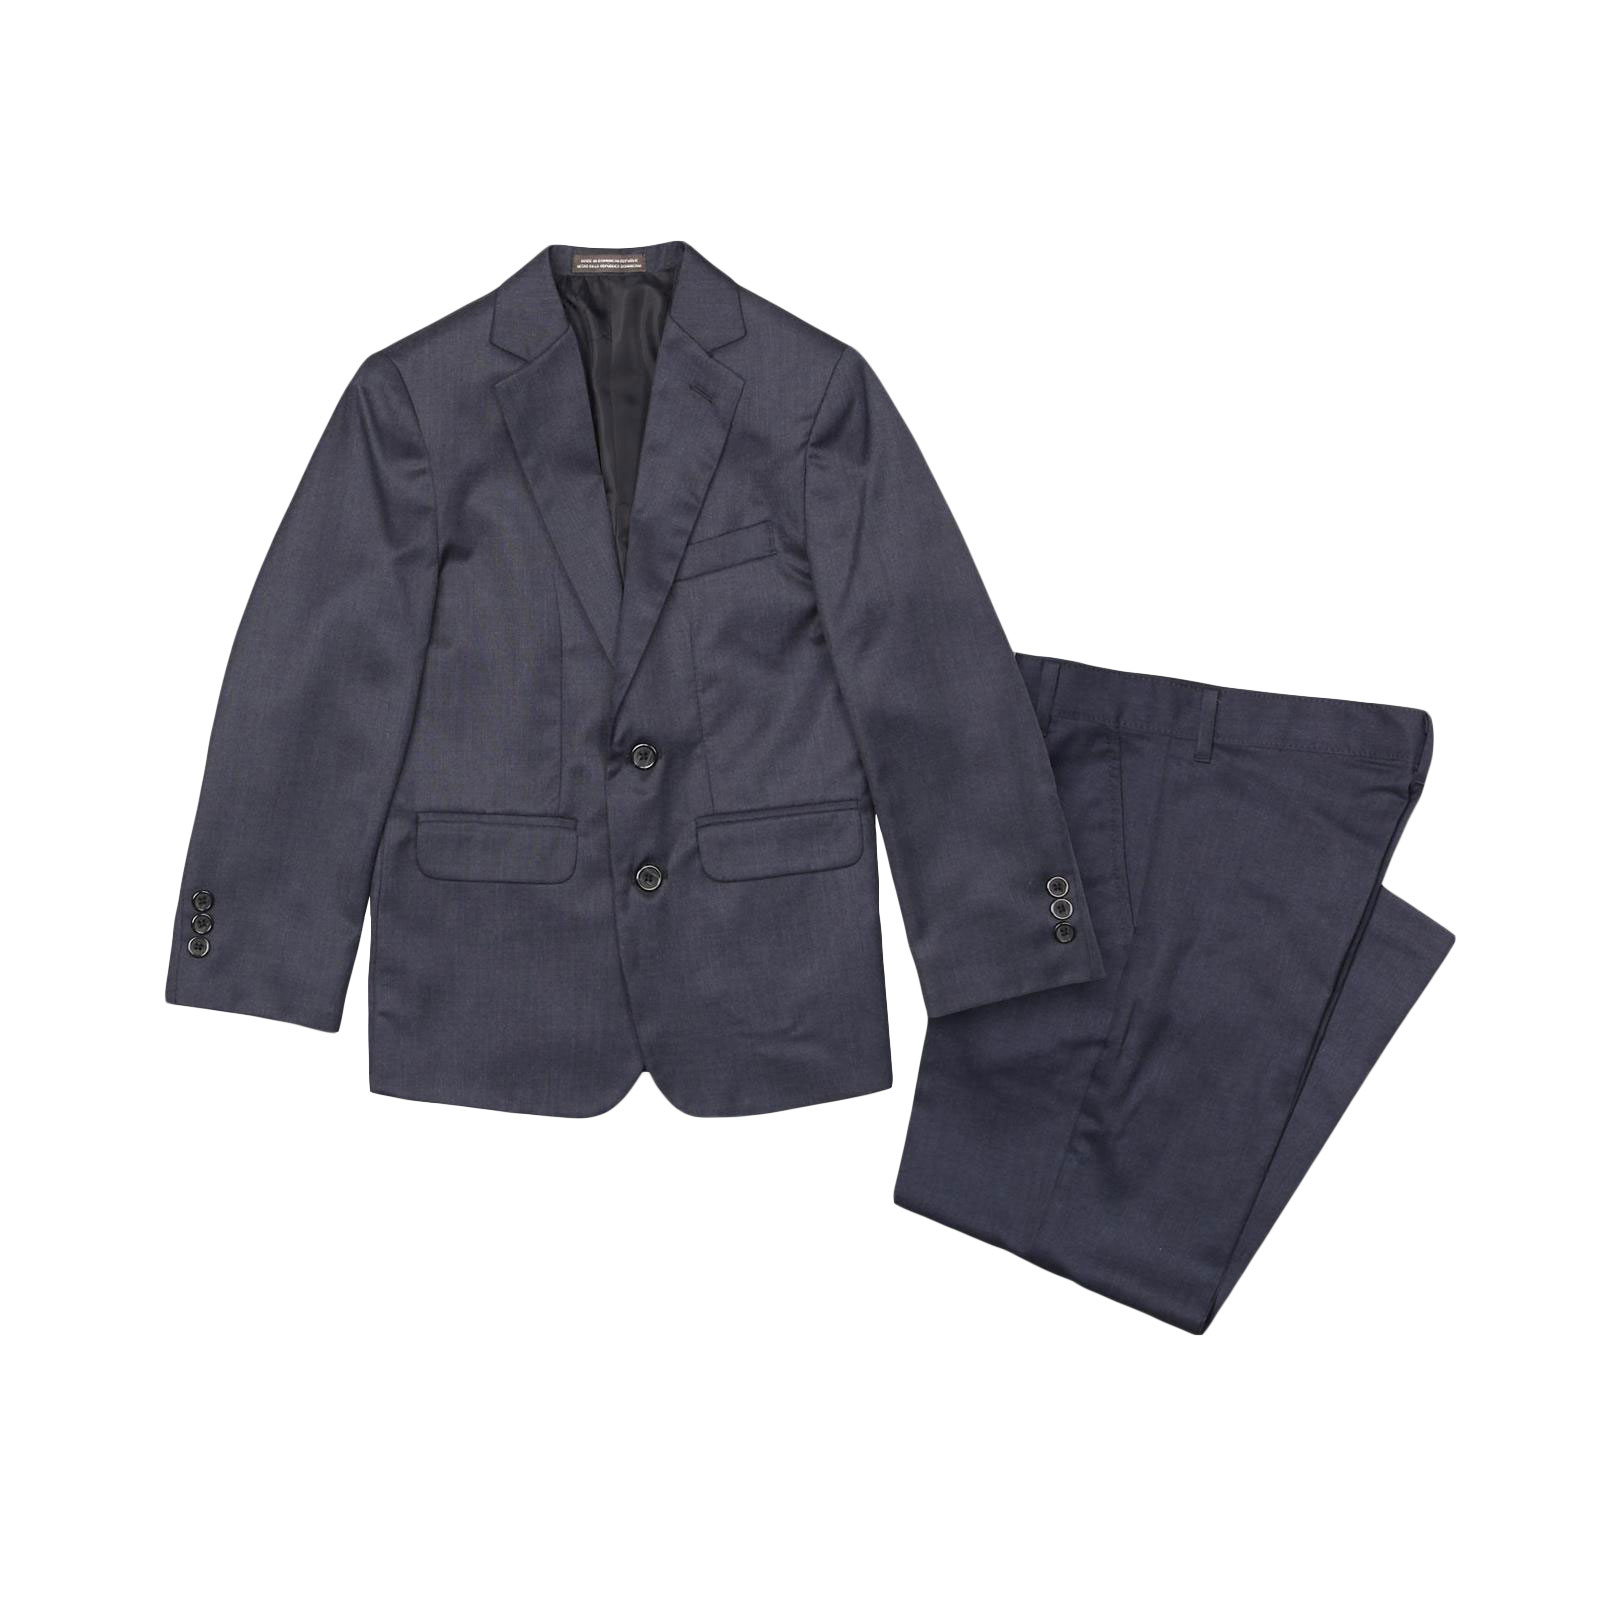 Dockers Boy's Suit Jacket & Pants